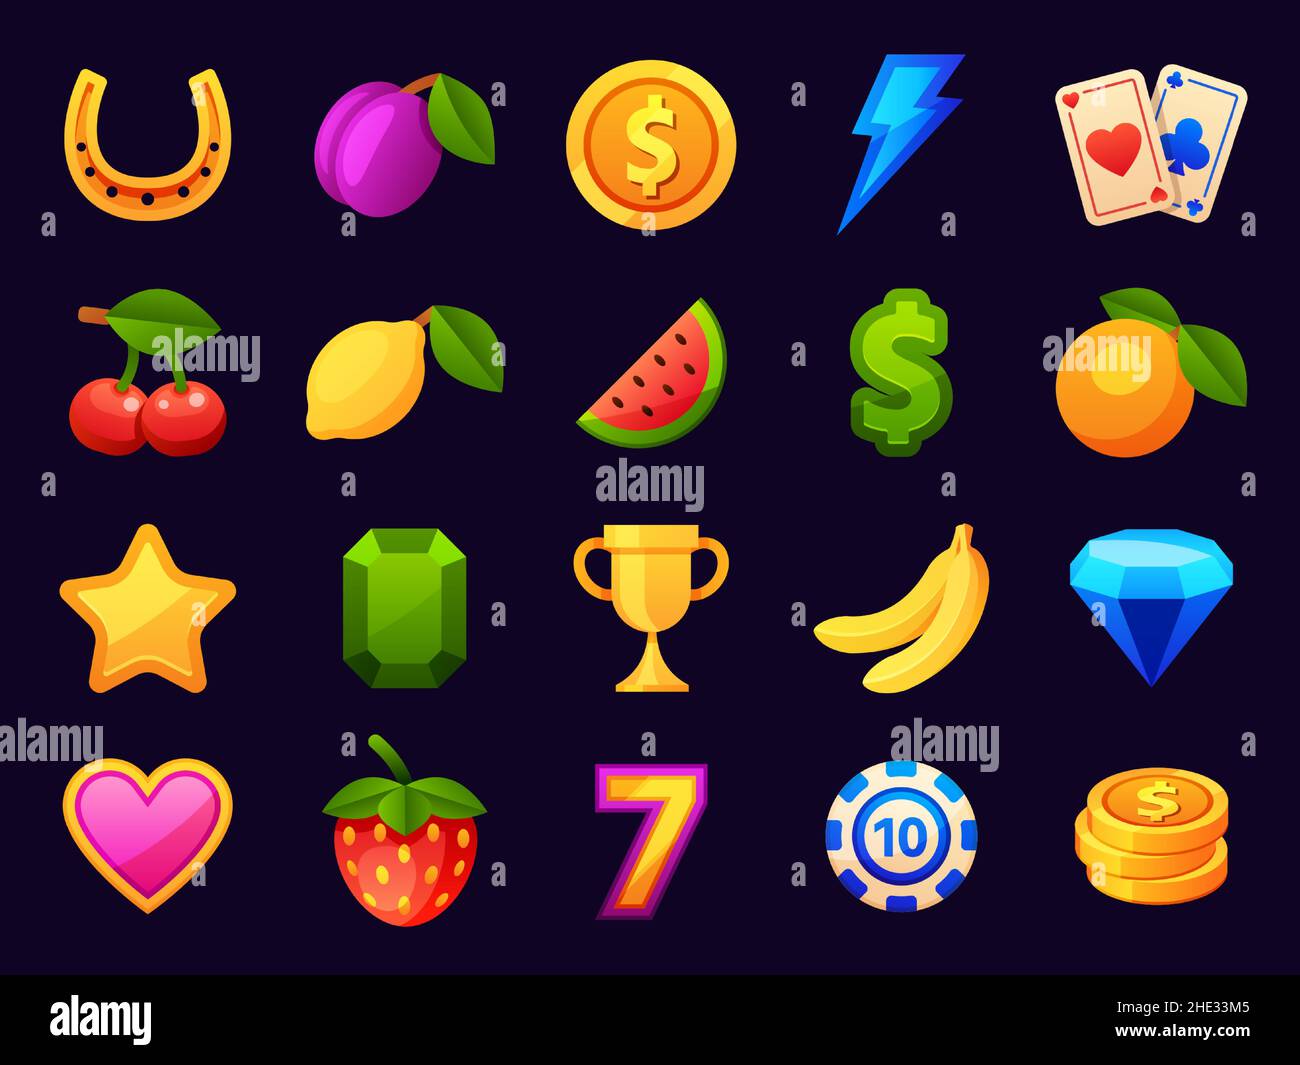 Casino slot machine Symbole, Glücksspiel-Symbole. Cartoon-Elemente für mobile Casino-App. Kirsche, Münzen, Trophäe und Karten Vektor-Set Stock Vektor